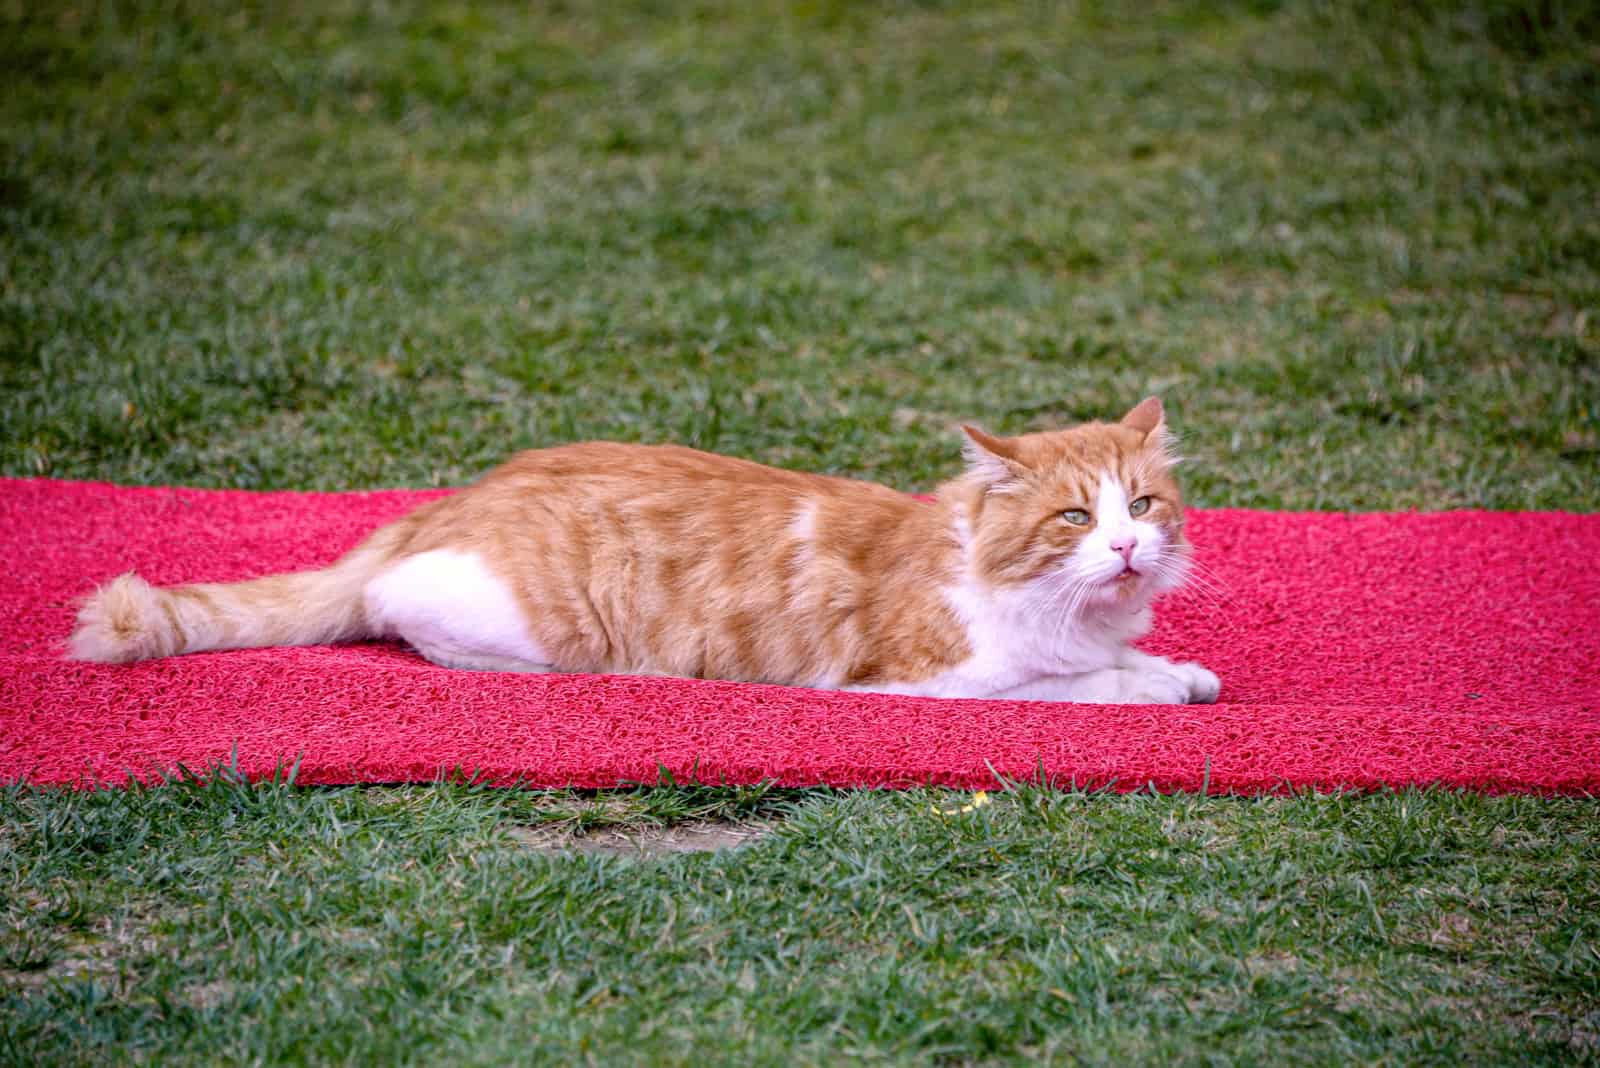 a beautiful cat lying on a sponge